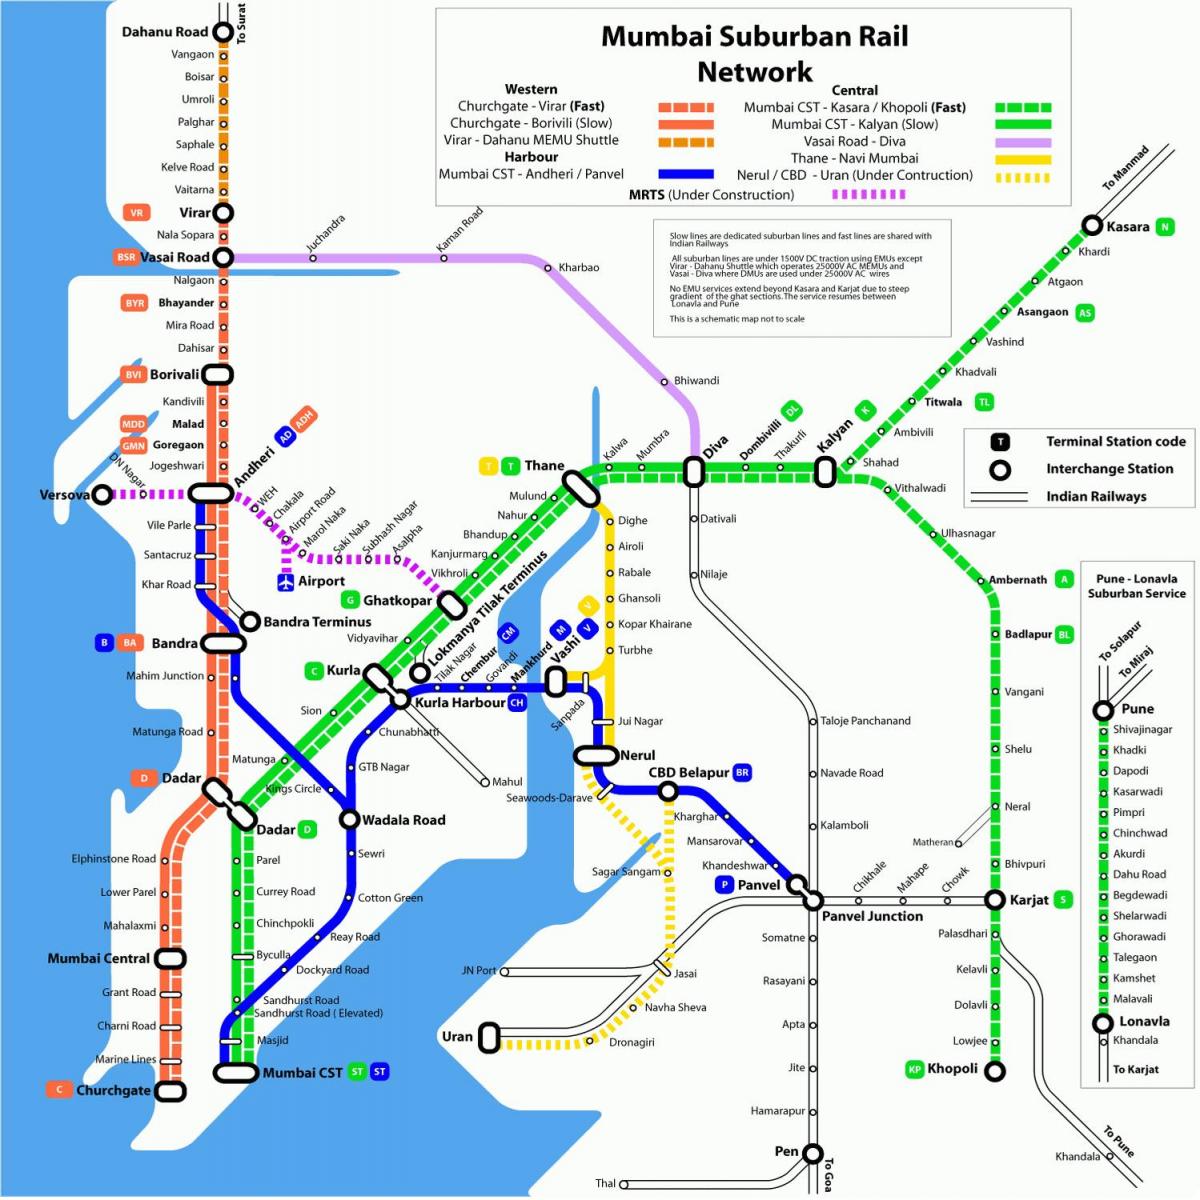 孟买地铁列车的地图